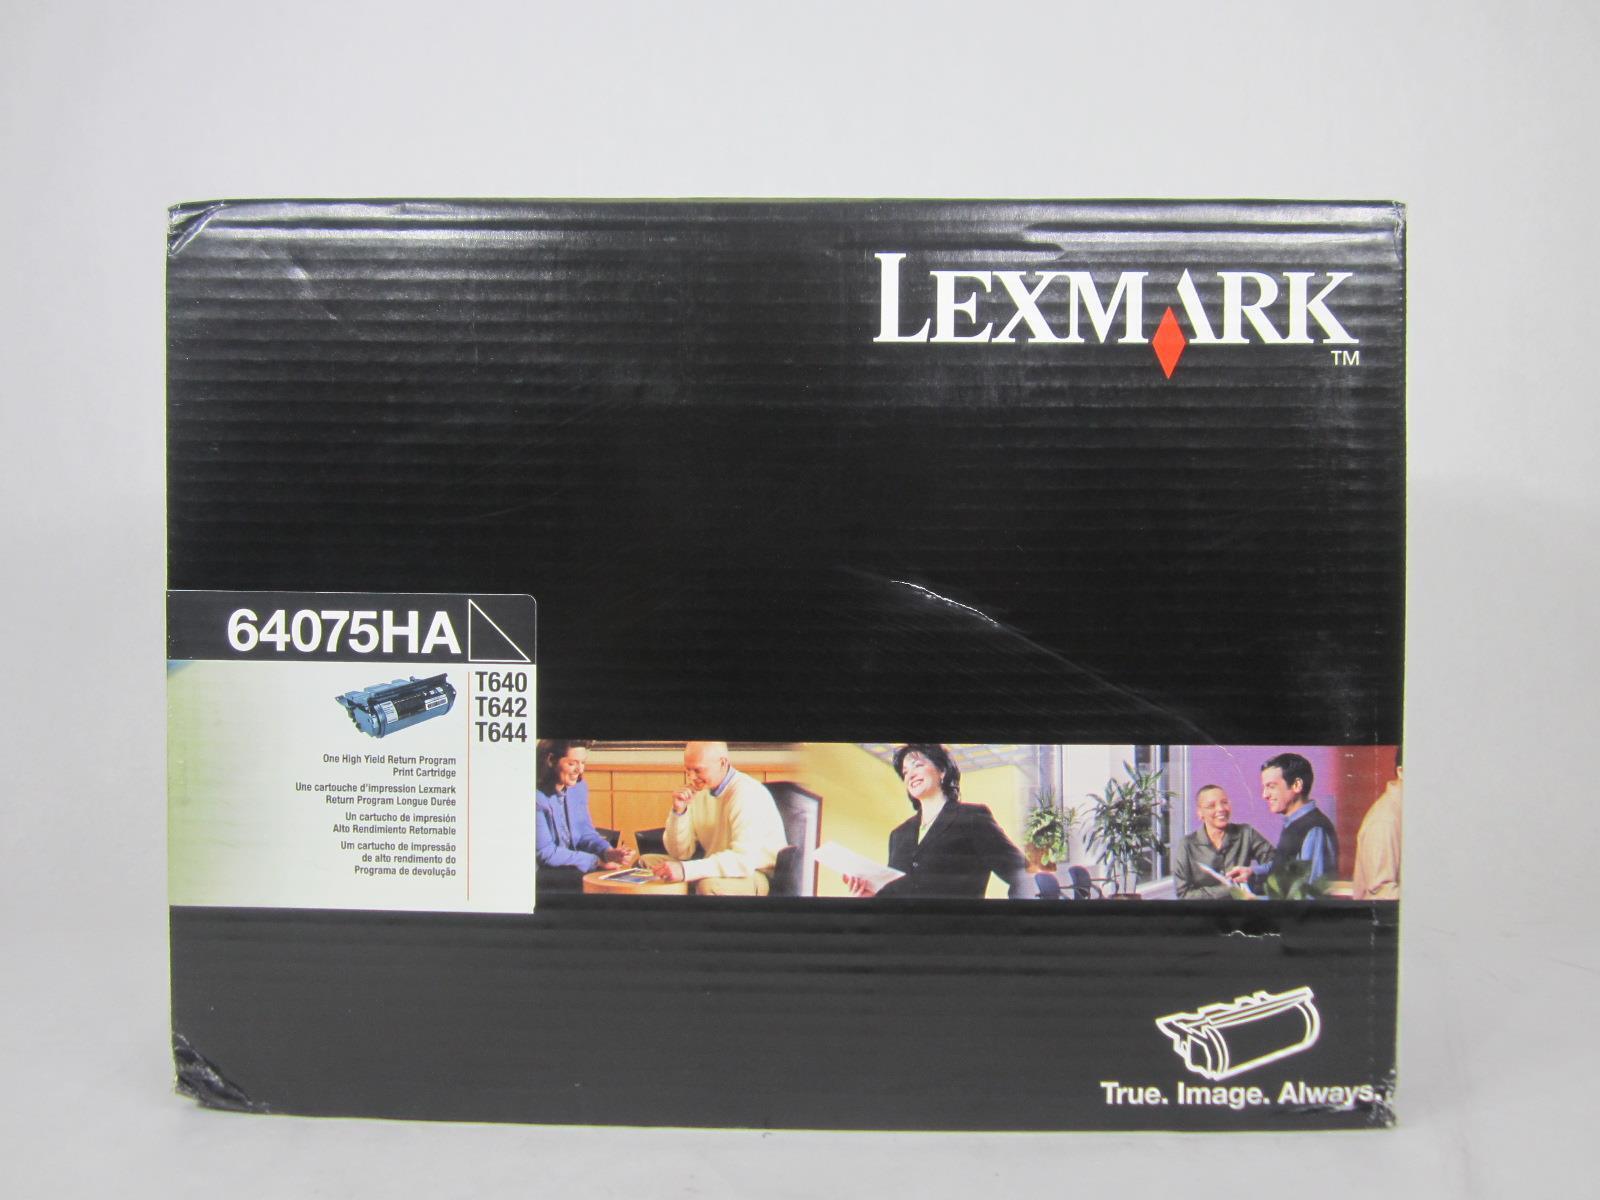 Lexmark 64075HA Toner Cartridge Black High Yield For Lexmark T640 T642 T644  NEW